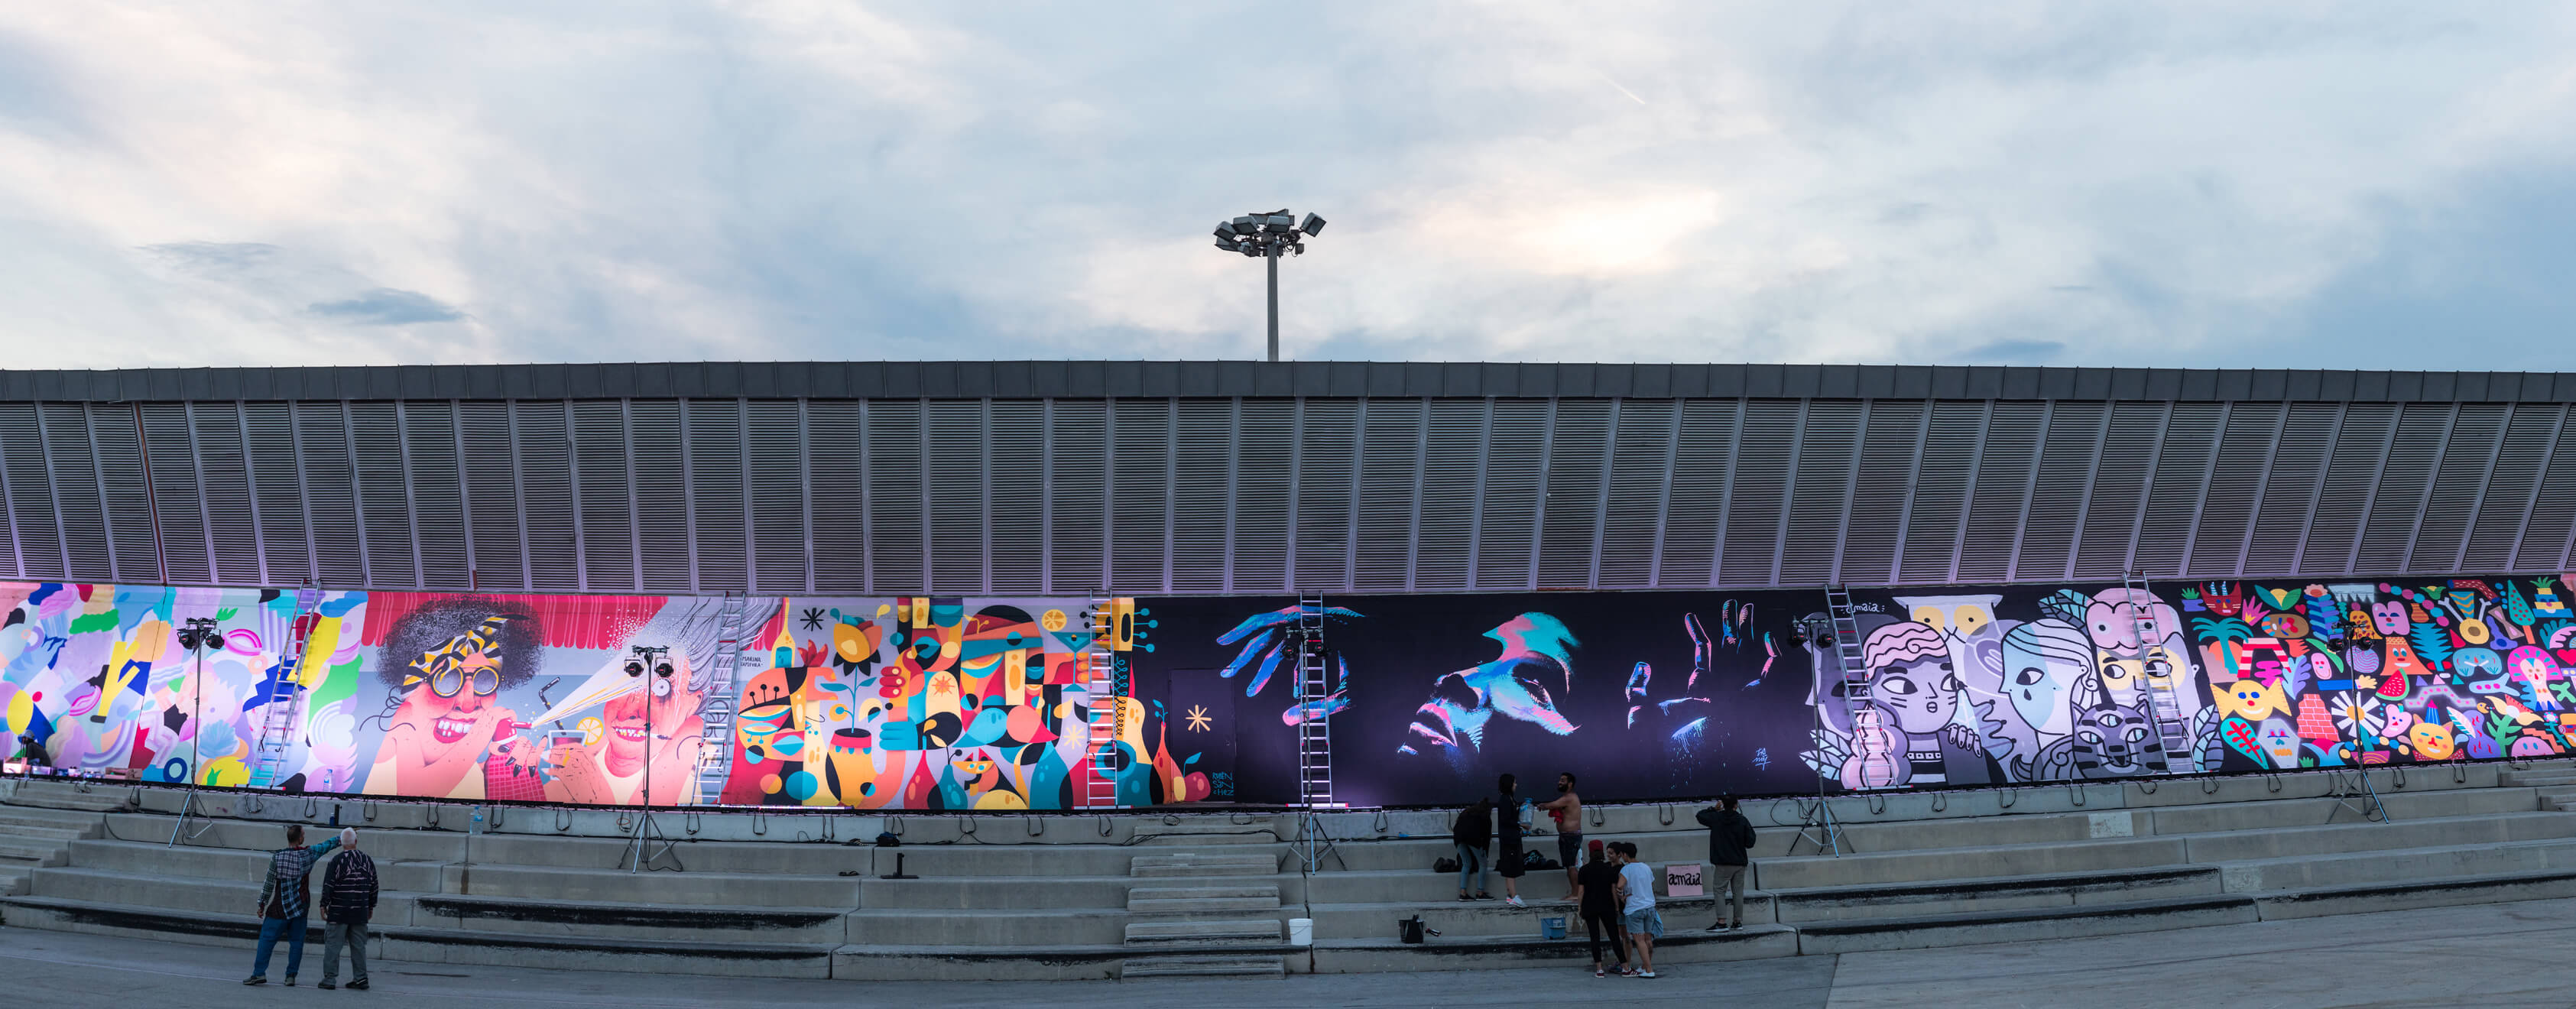  Kūrybiška meno siena Primavera Sound muzikos festivalyje Barselonoje, kurį remia SEAT